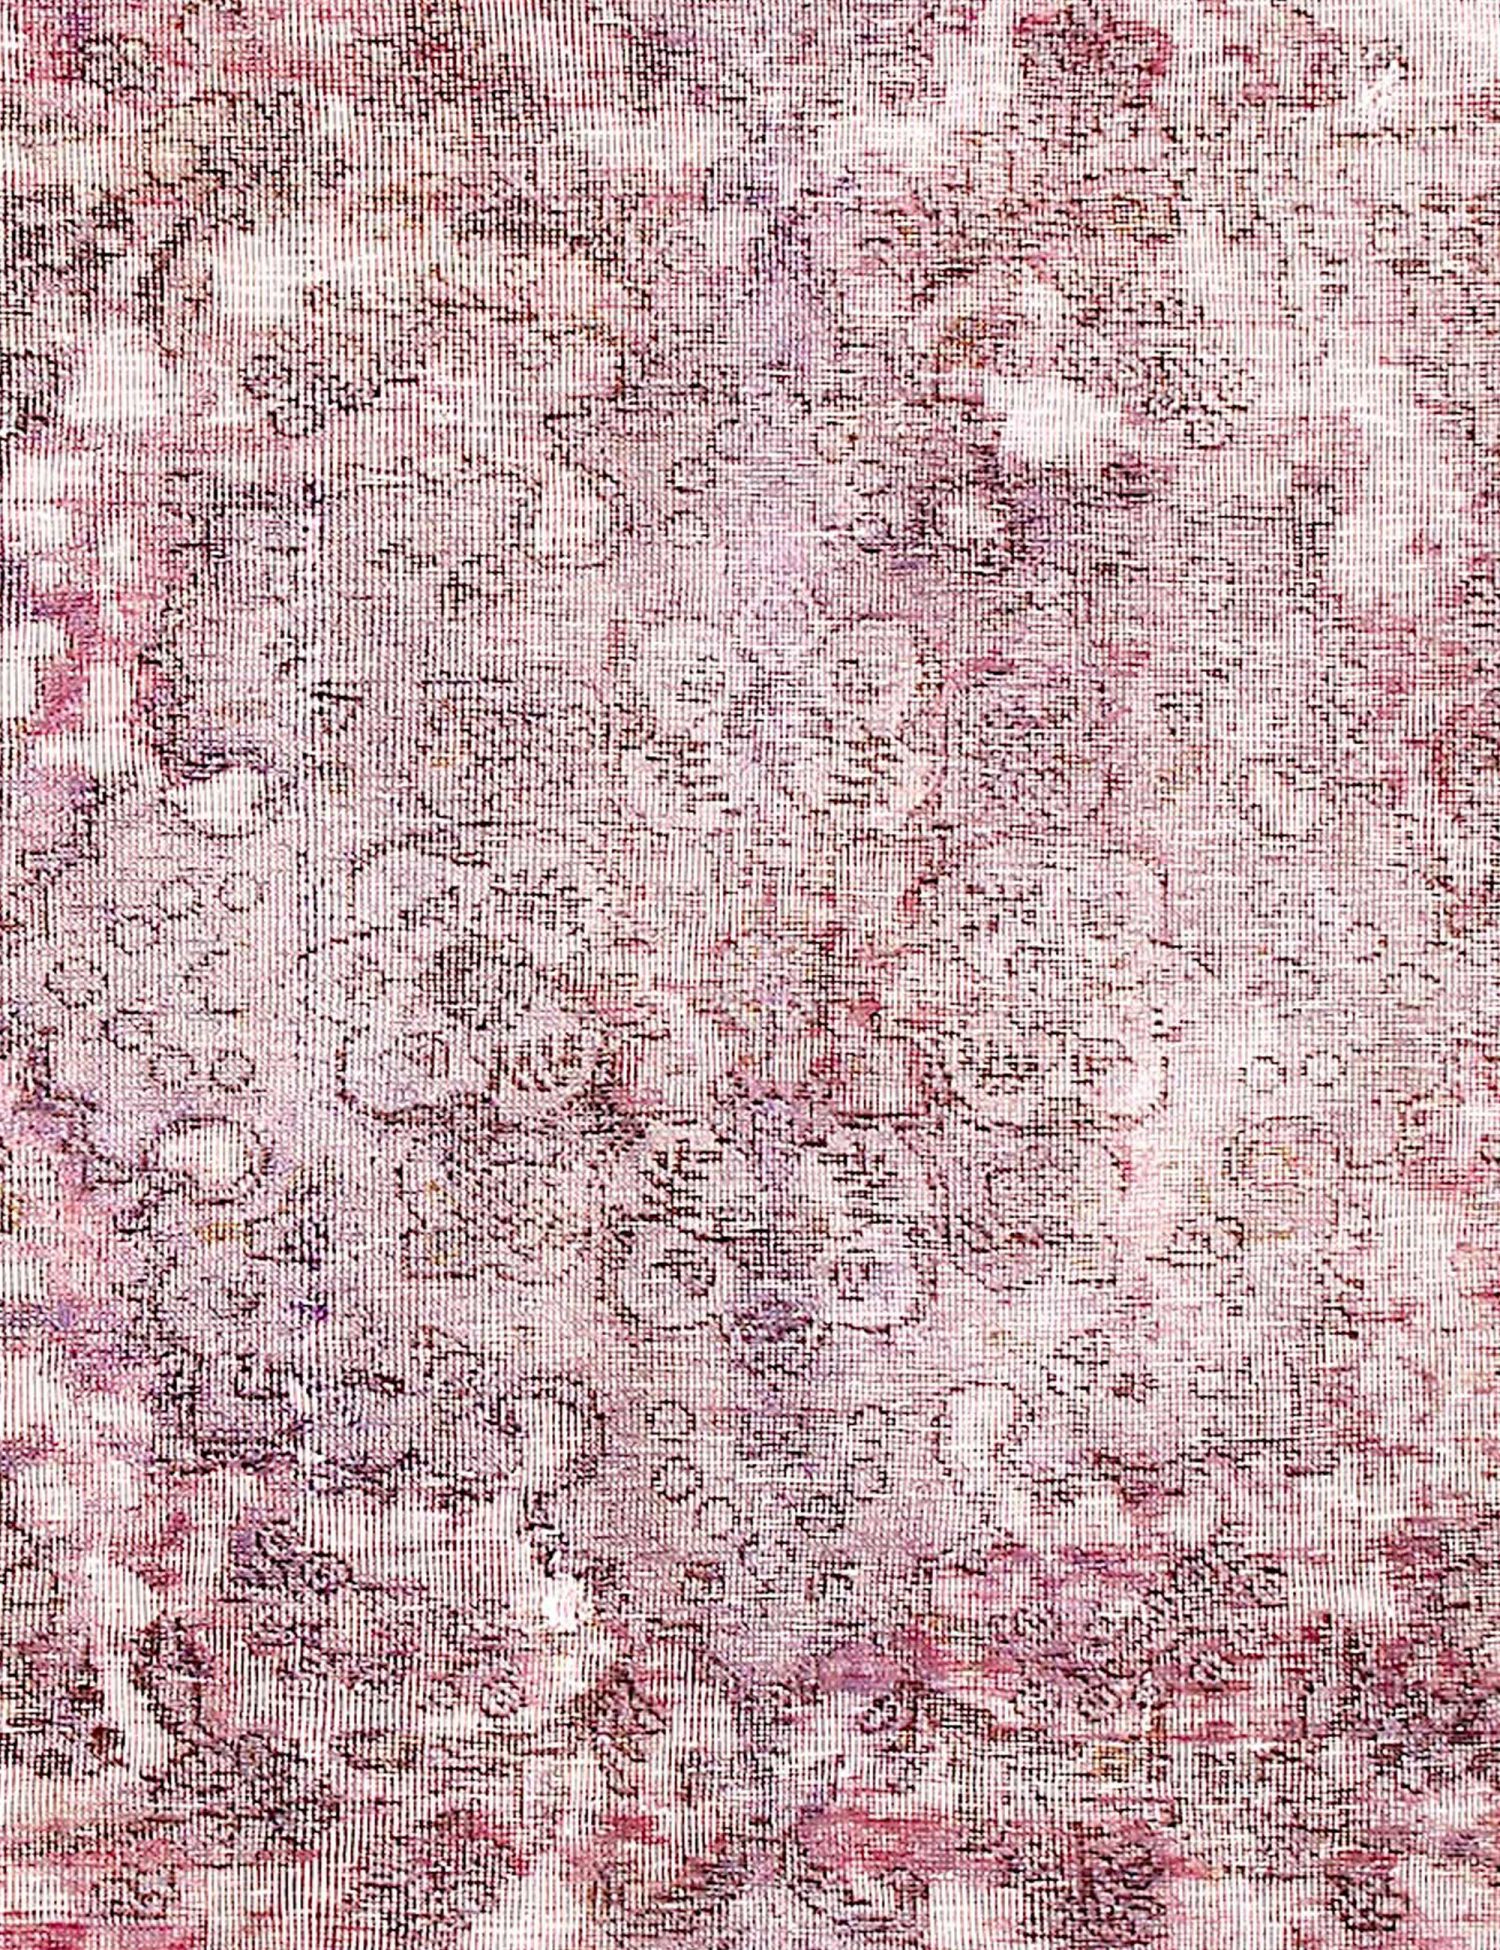 Persischer Vintage Teppich  lila <br/>300 x 203 cm